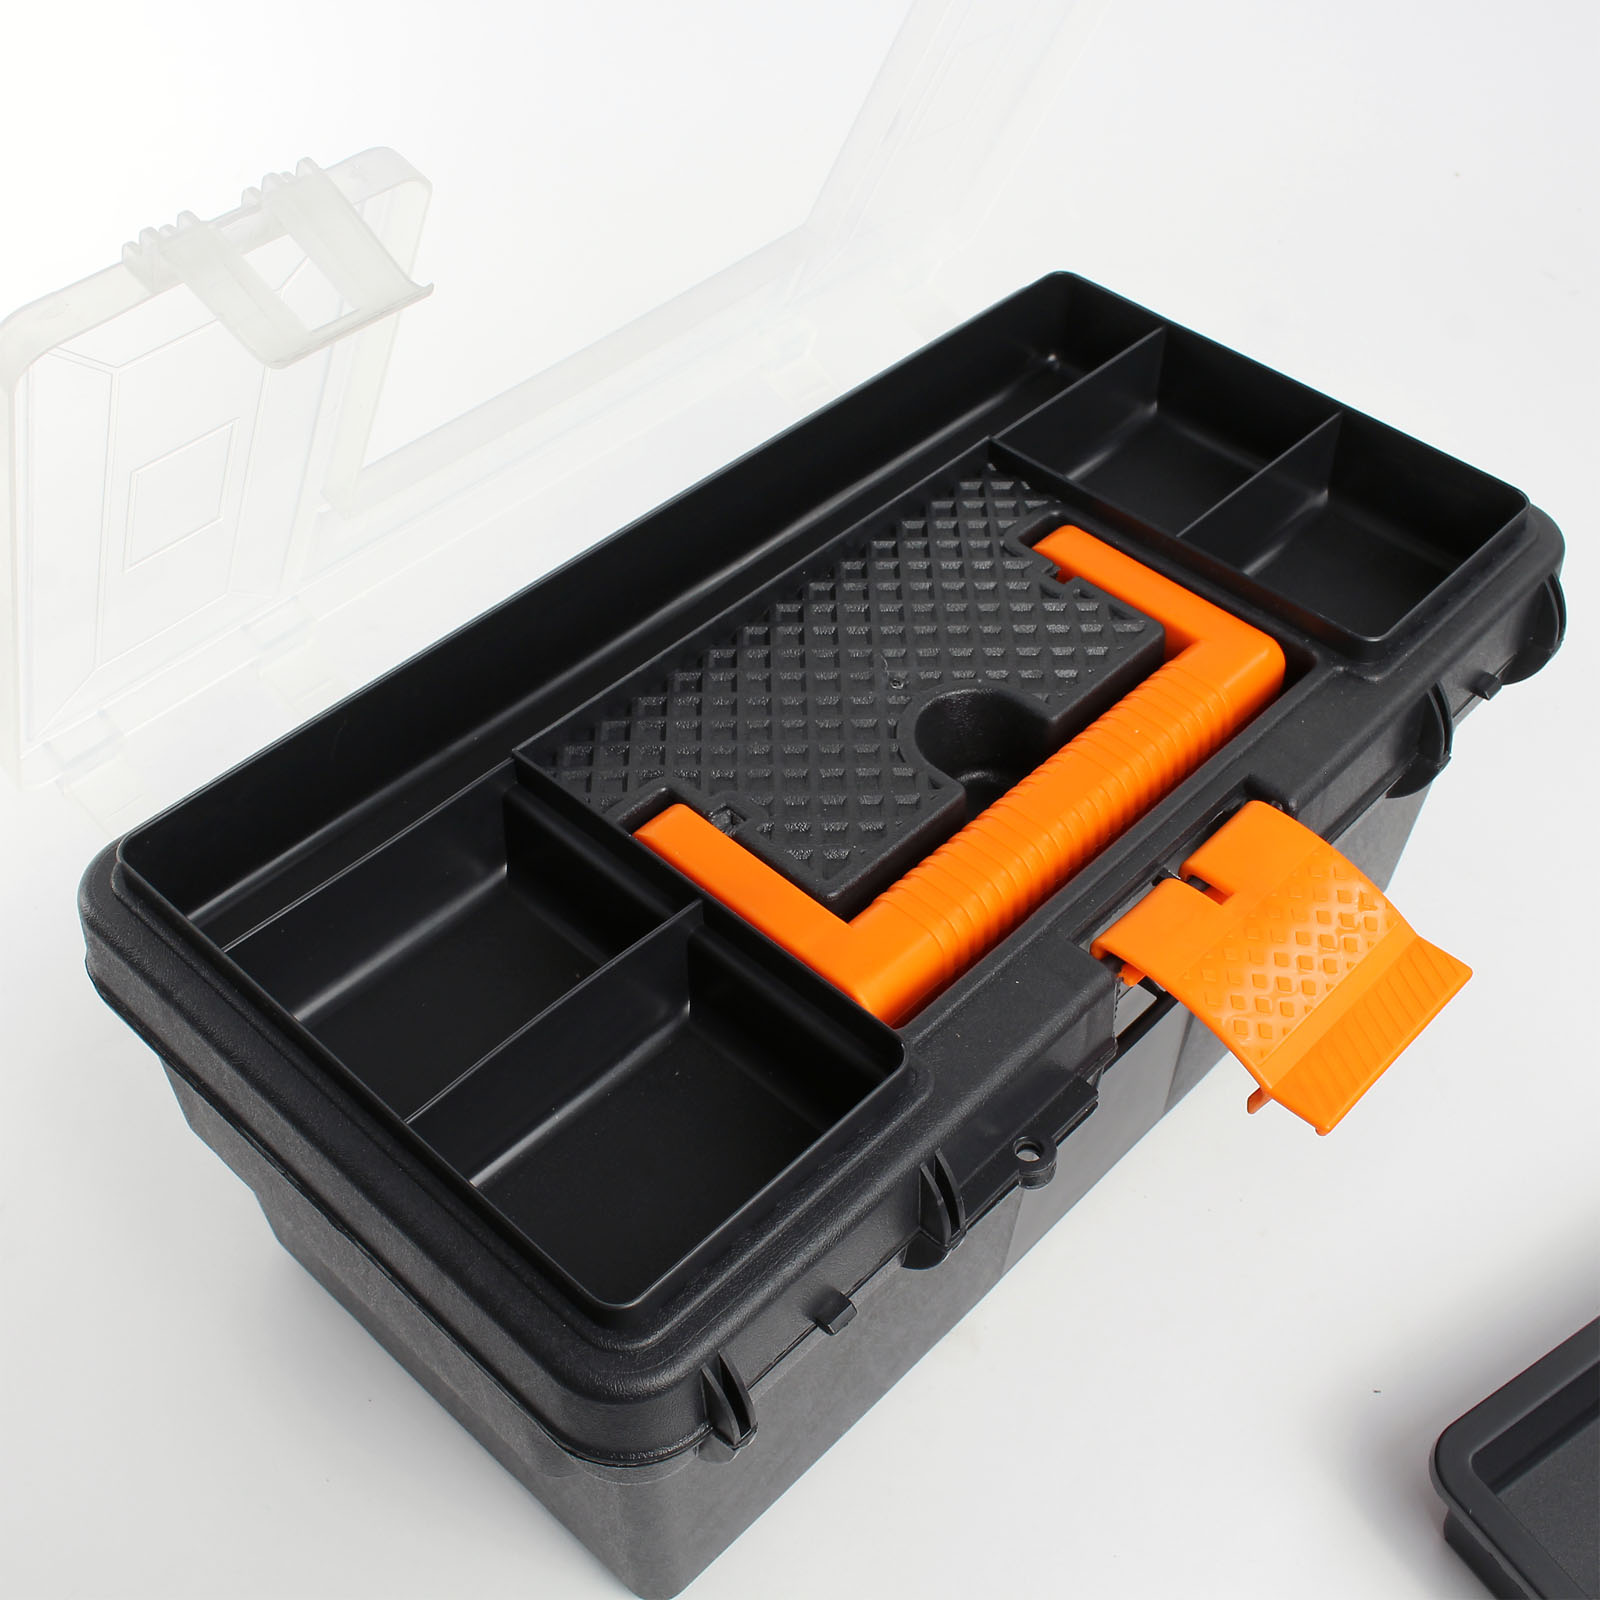 Caja de herramientas vacía de plástico | L BOX 136 (negro), incluye inserto  para portátil y tarjeta de documentos, caja de herramientas grande vacía 